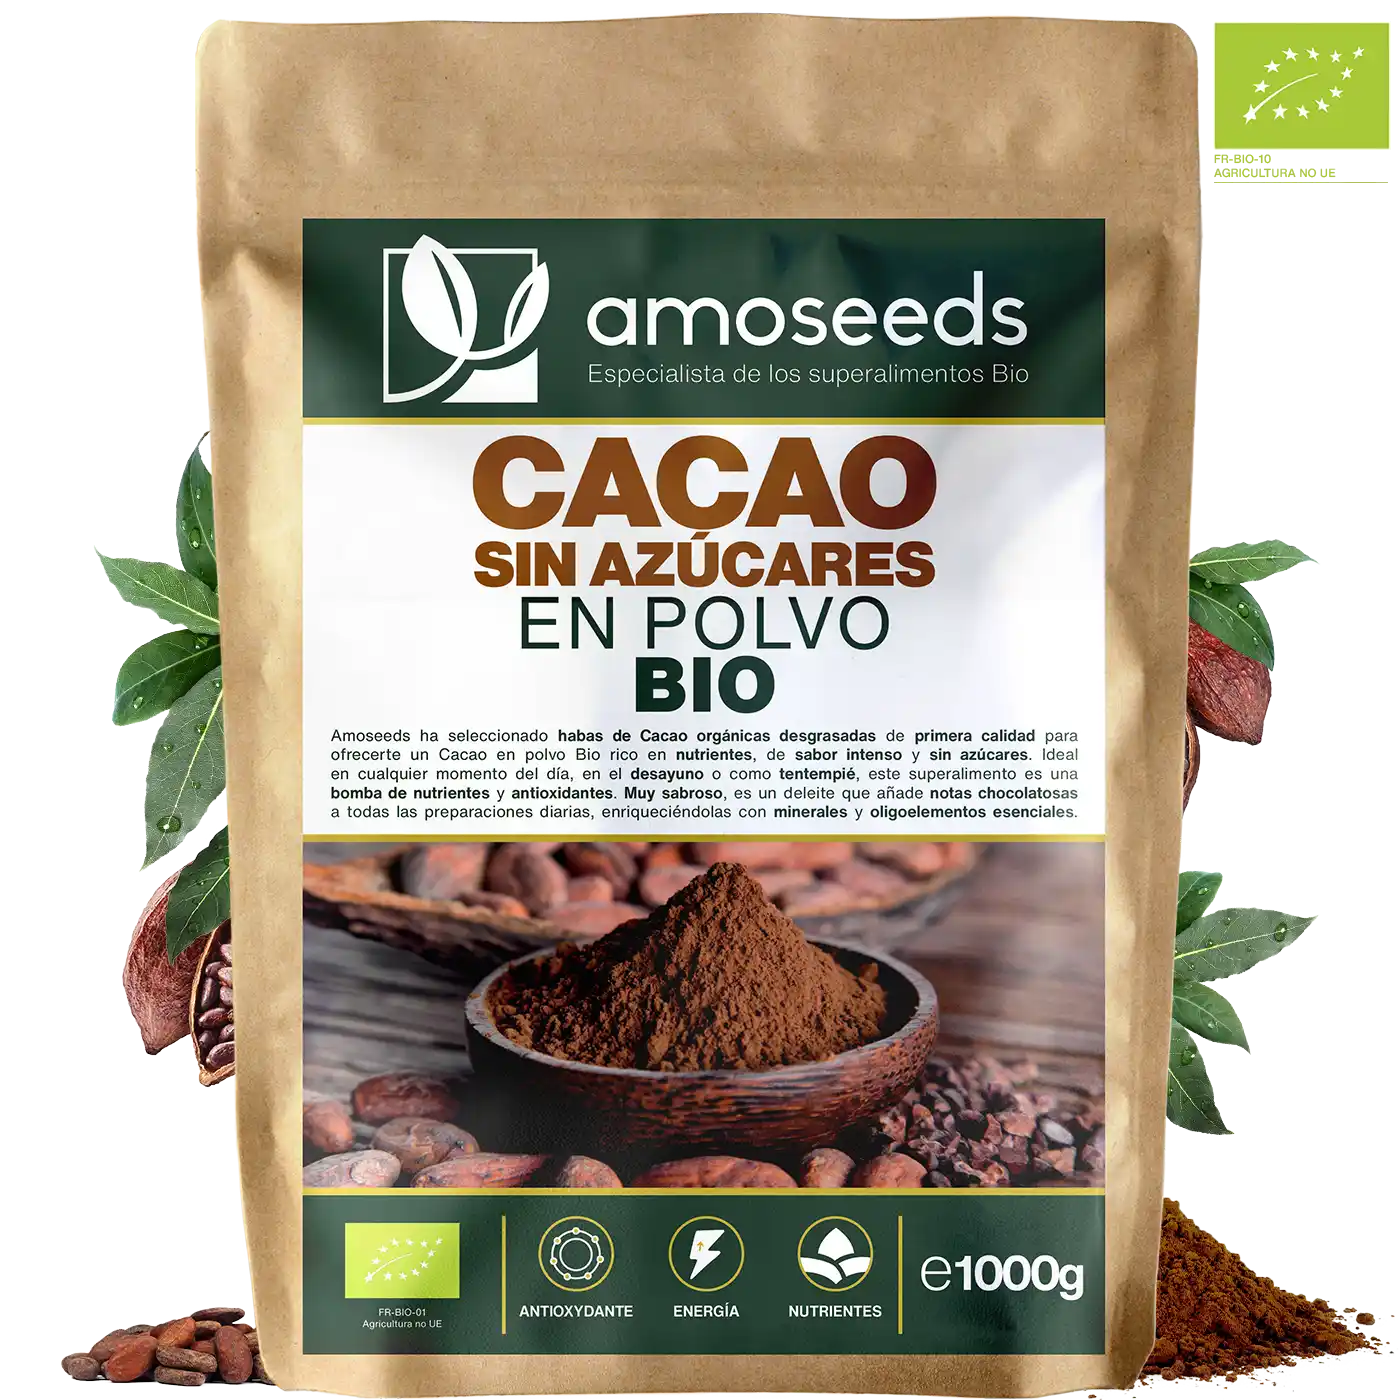 Cacao bio sin azucares amoseeds especialista de los superalimentos bio